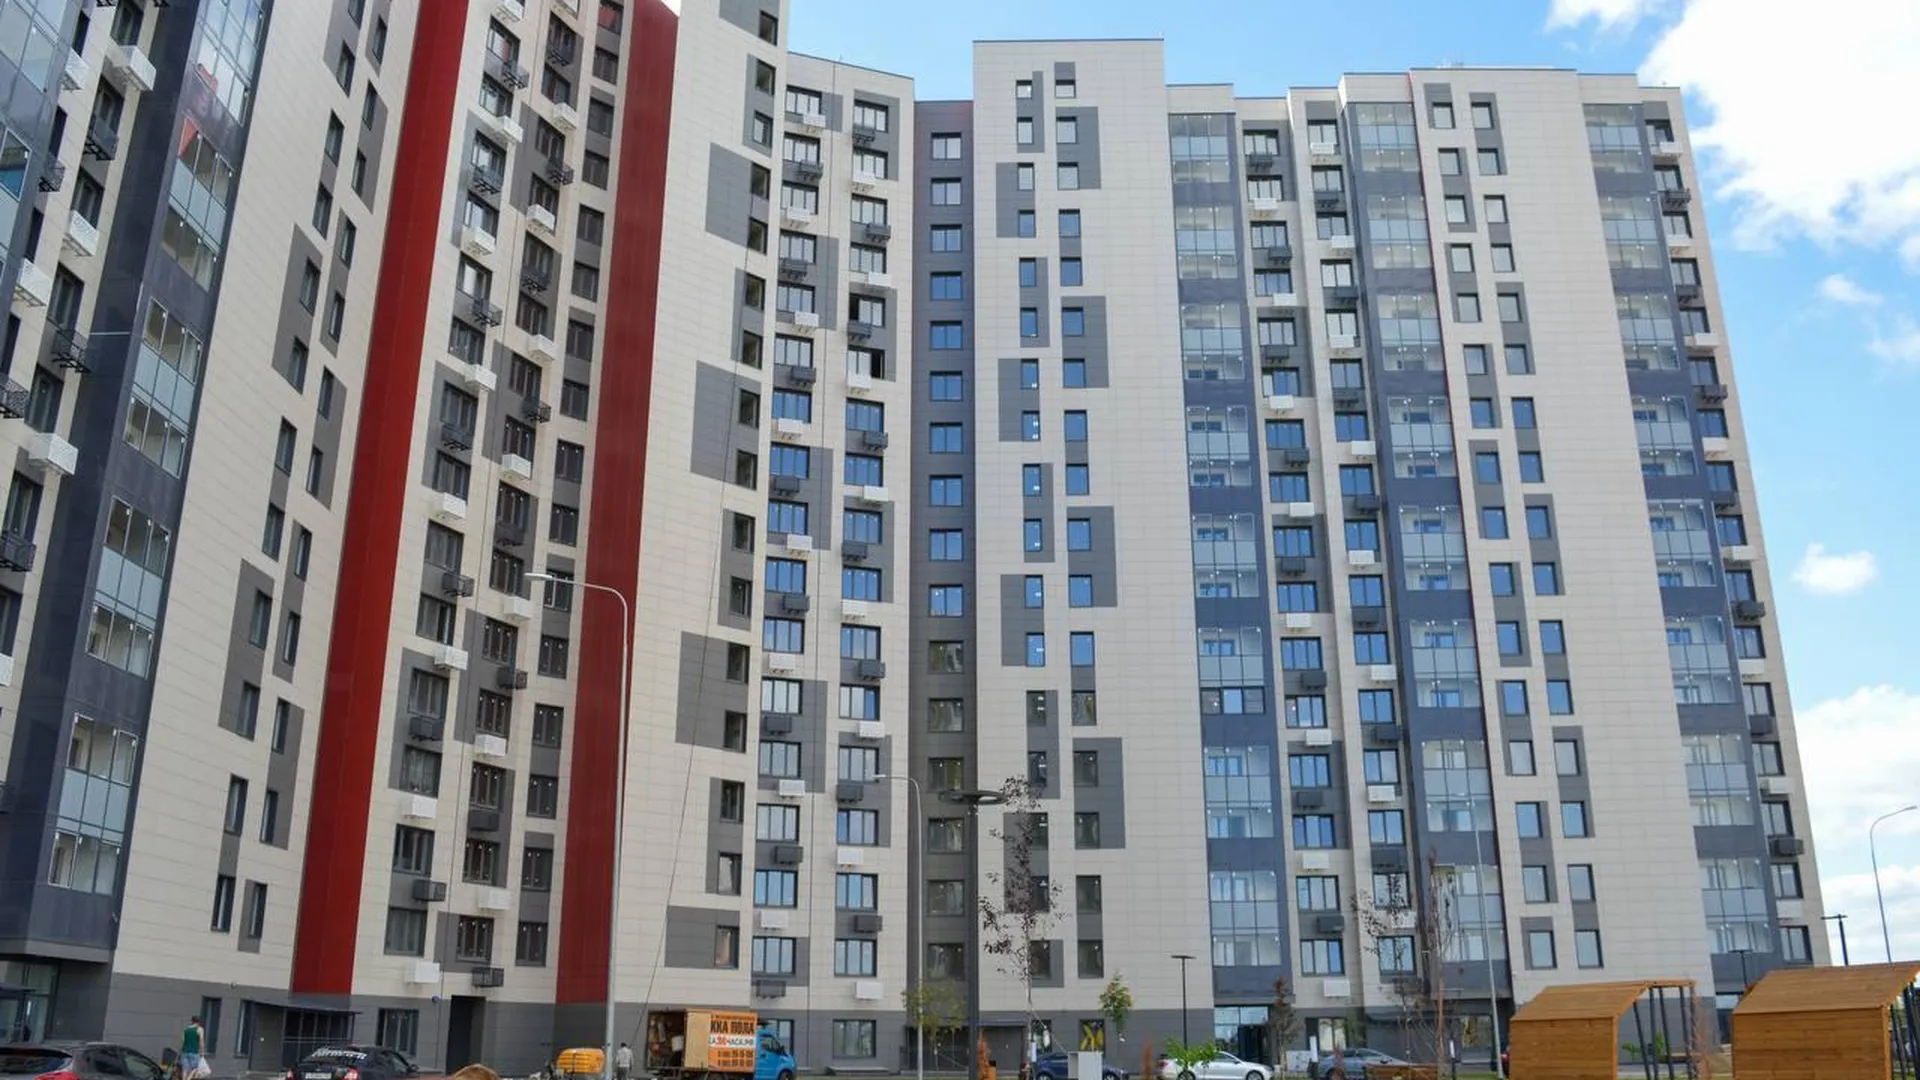 Более семисот земельных участков для жилищного строительства выявили в Подмосковье в прошлом году